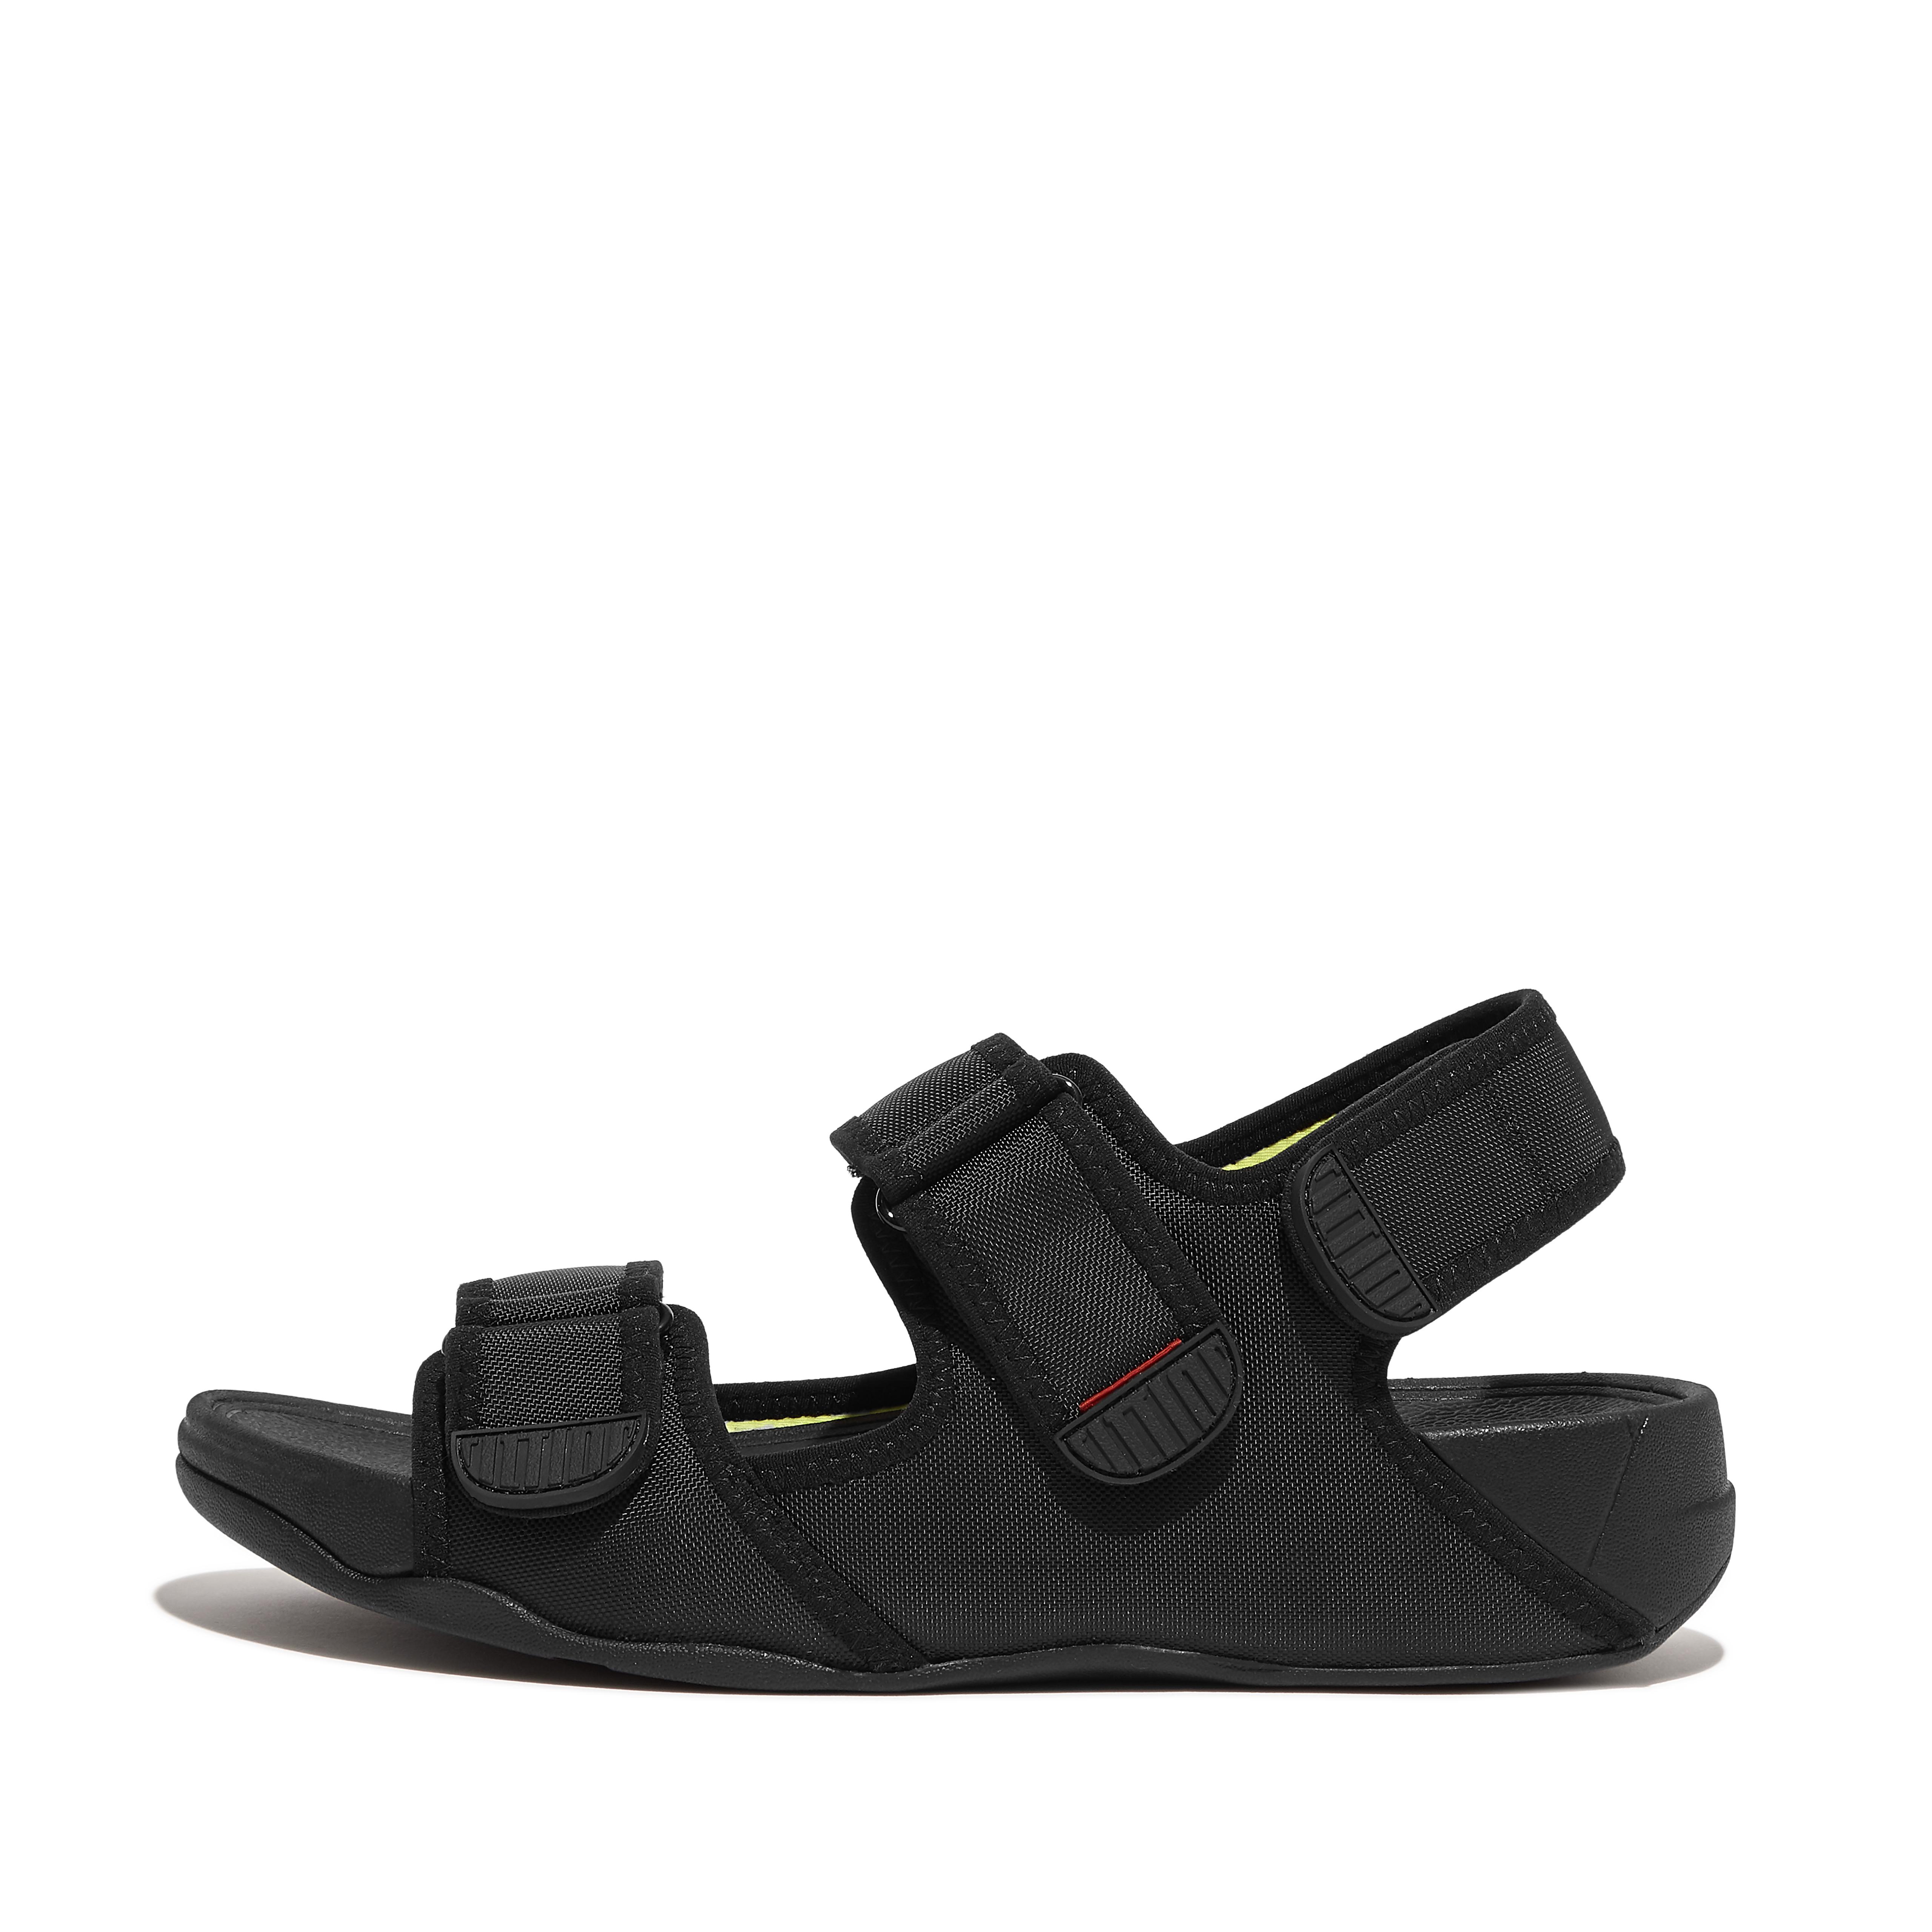 핏플랍 Fitflop Adjustable Water-Resistant Back-Strap Sandals,Black